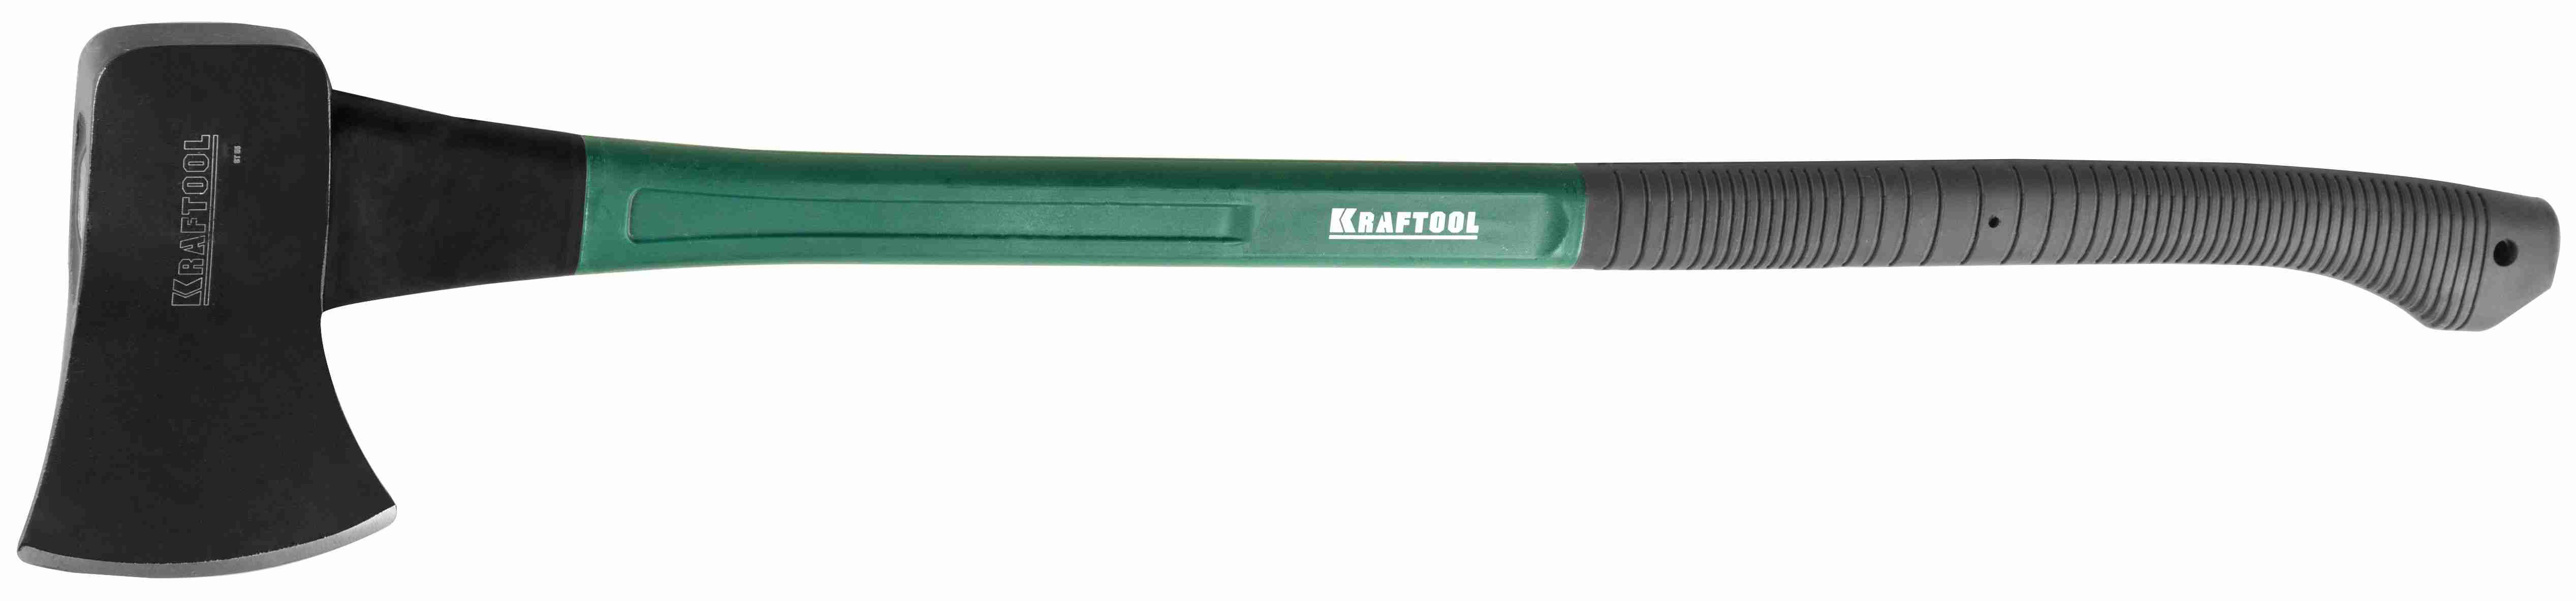 Универсальный топор 1.6 кг Kraftool EXPERT 20651-16 фото